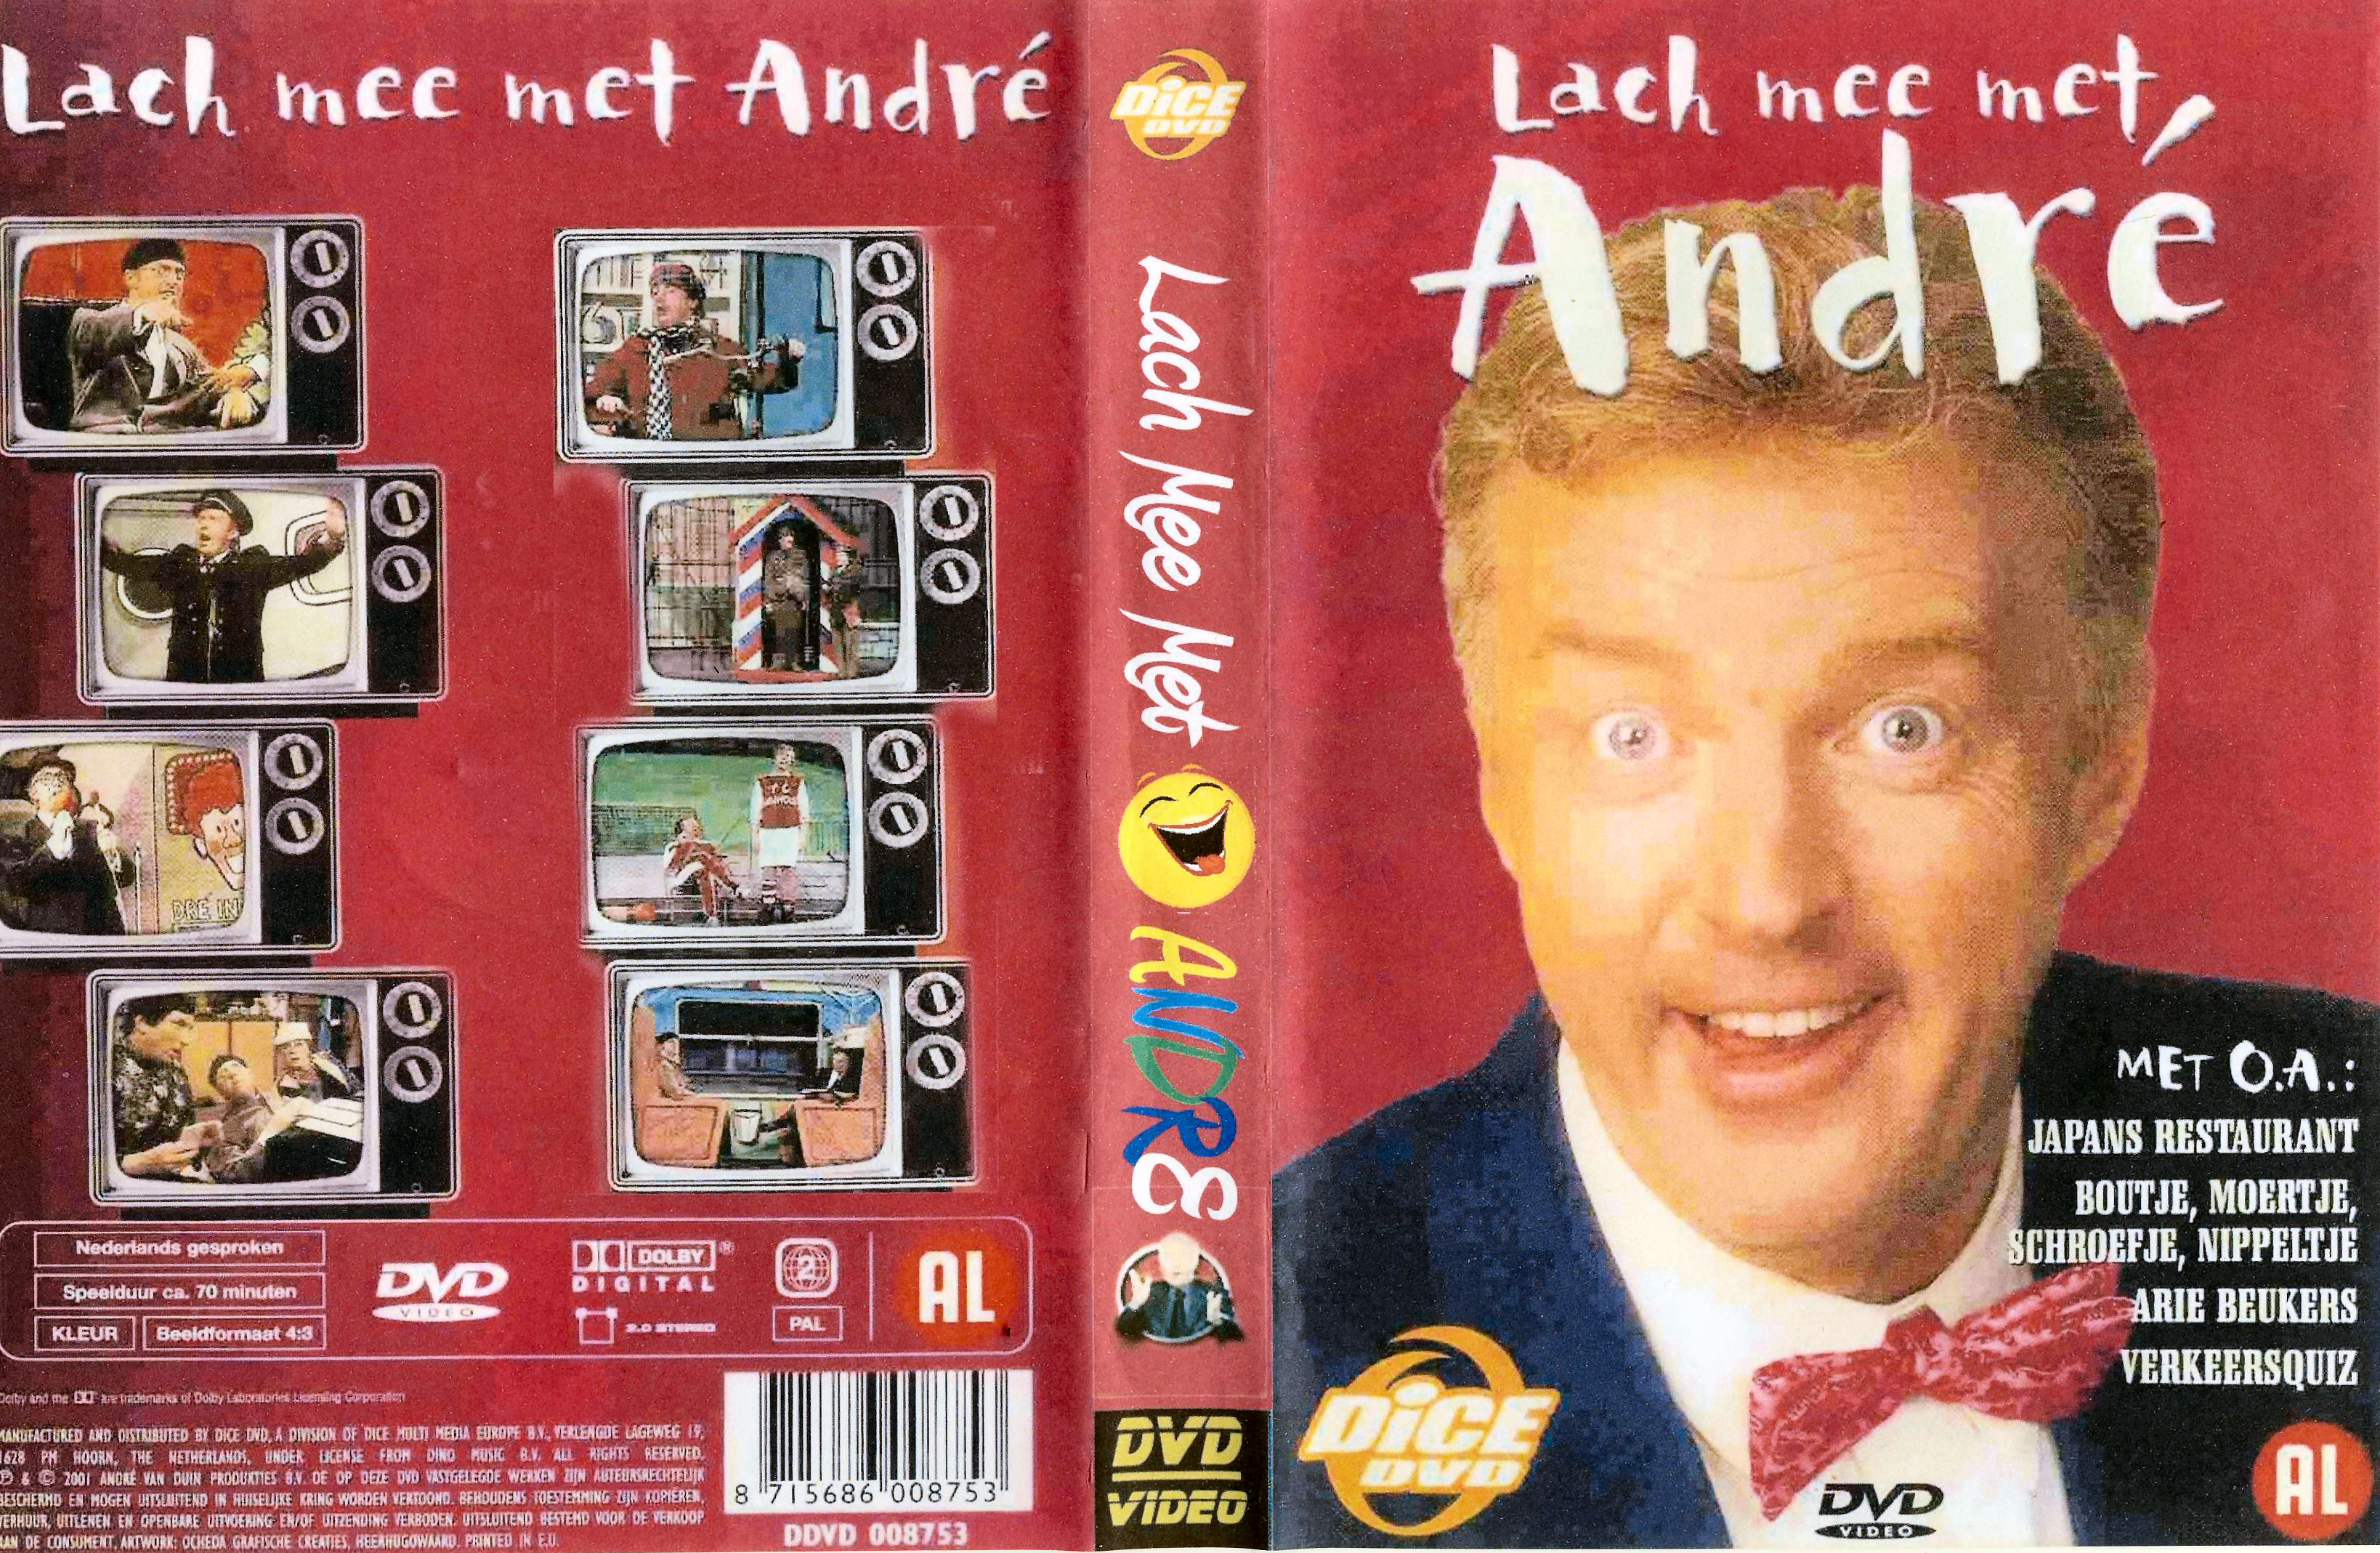 Lach mee met Andre DVD 6 van 6